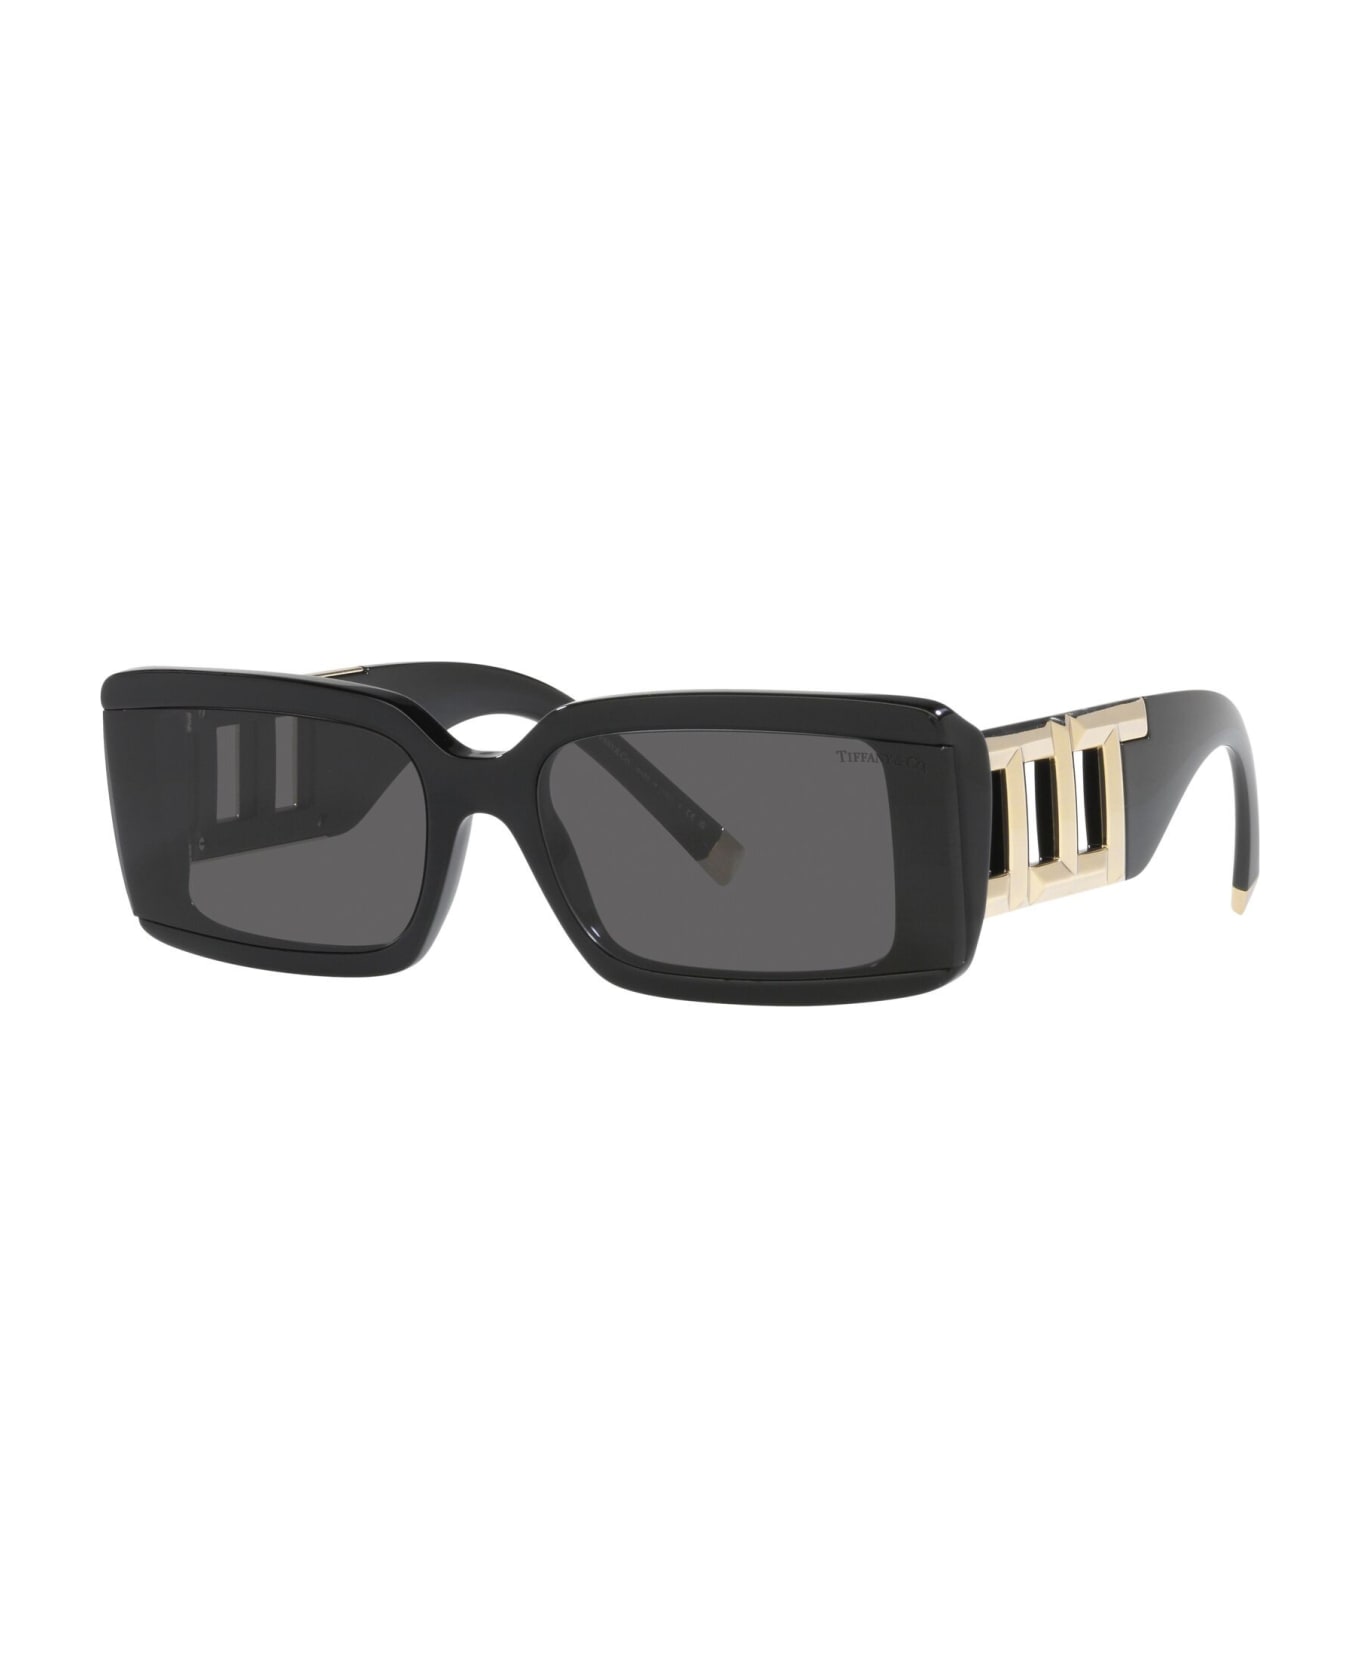 Tiffany & Co. Sunglasses - Nero/Nero